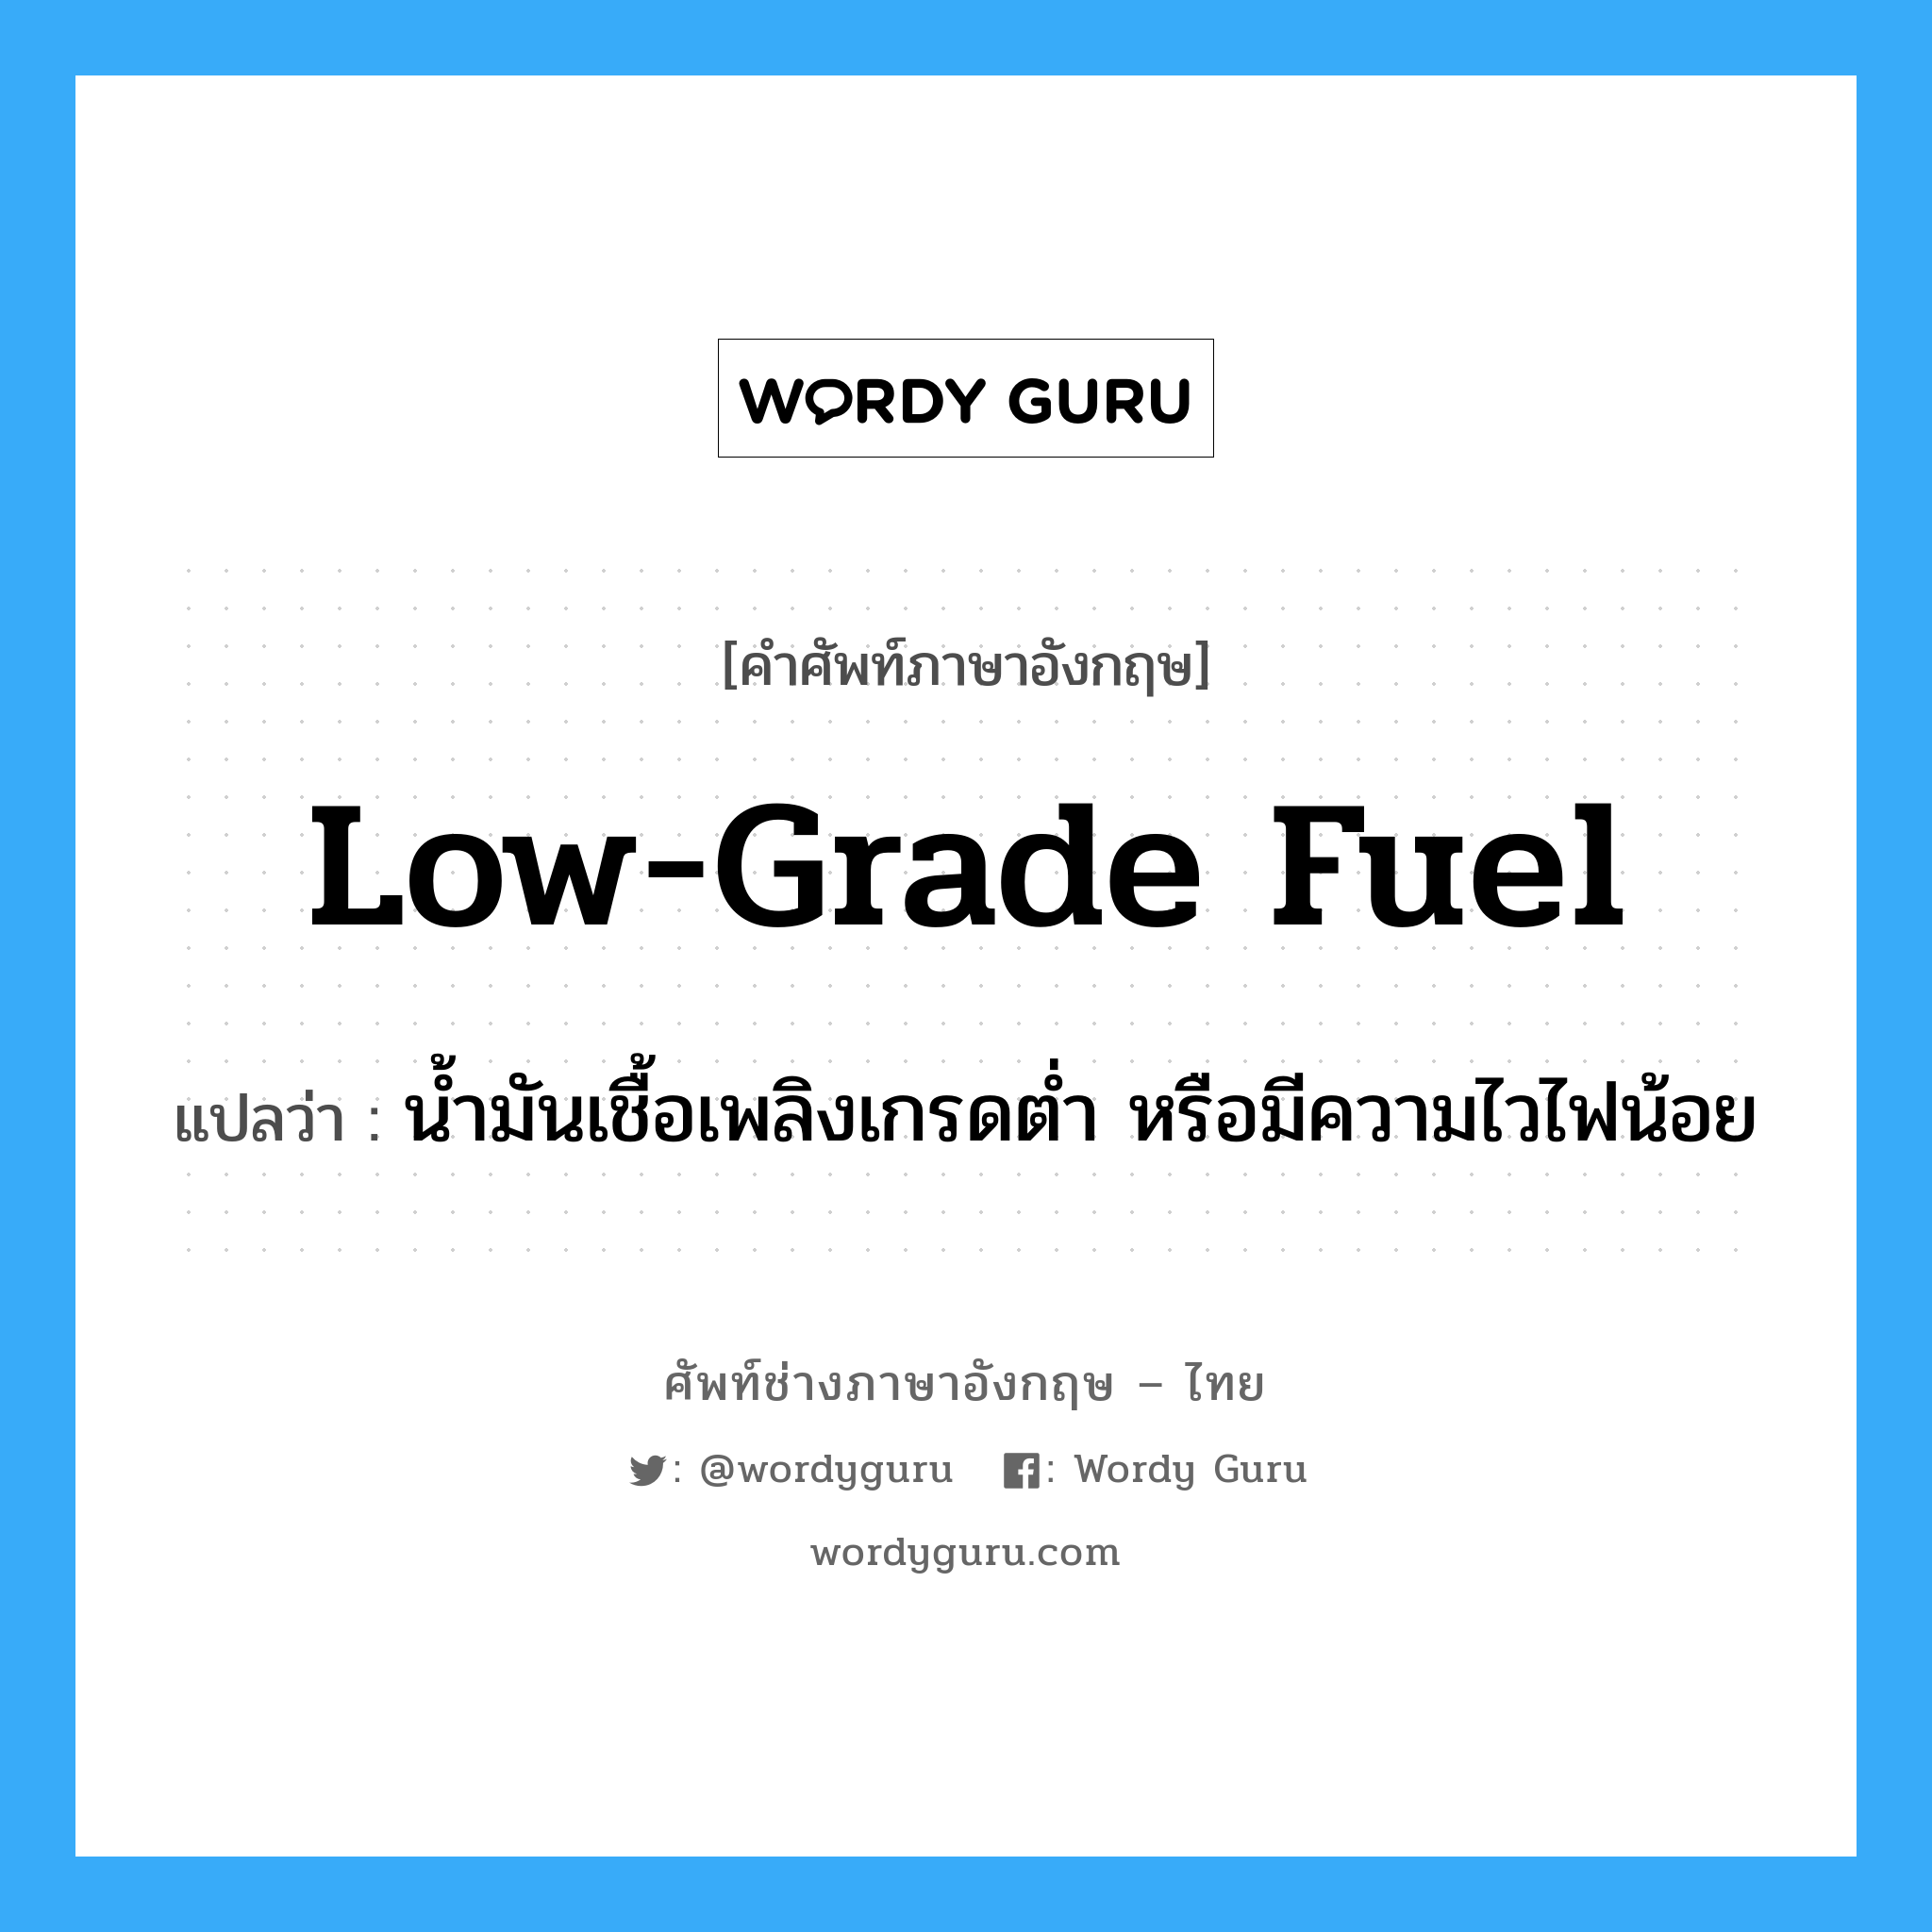 low-grade fuel แปลว่า?, คำศัพท์ช่างภาษาอังกฤษ - ไทย low-grade fuel คำศัพท์ภาษาอังกฤษ low-grade fuel แปลว่า น้ำมันเชื้อเพลิงเกรดต่ำ หรือมีความไวไฟน้อย